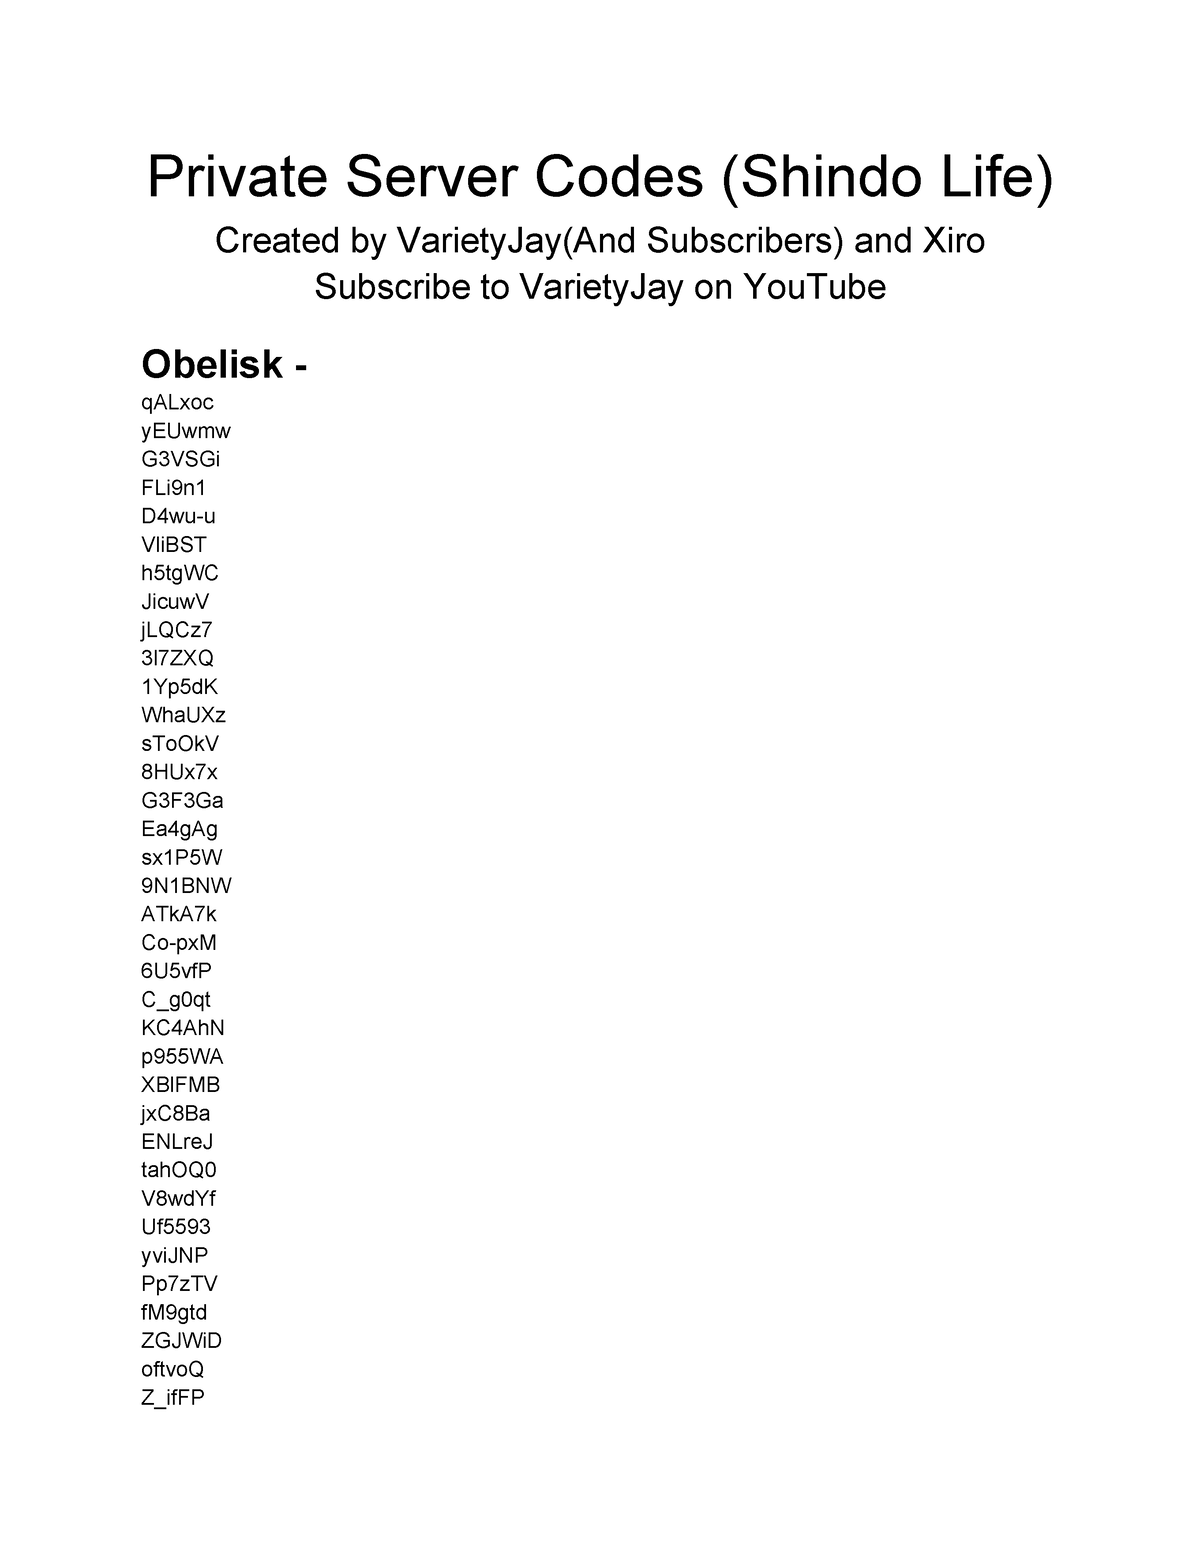 Shindo life priv server code